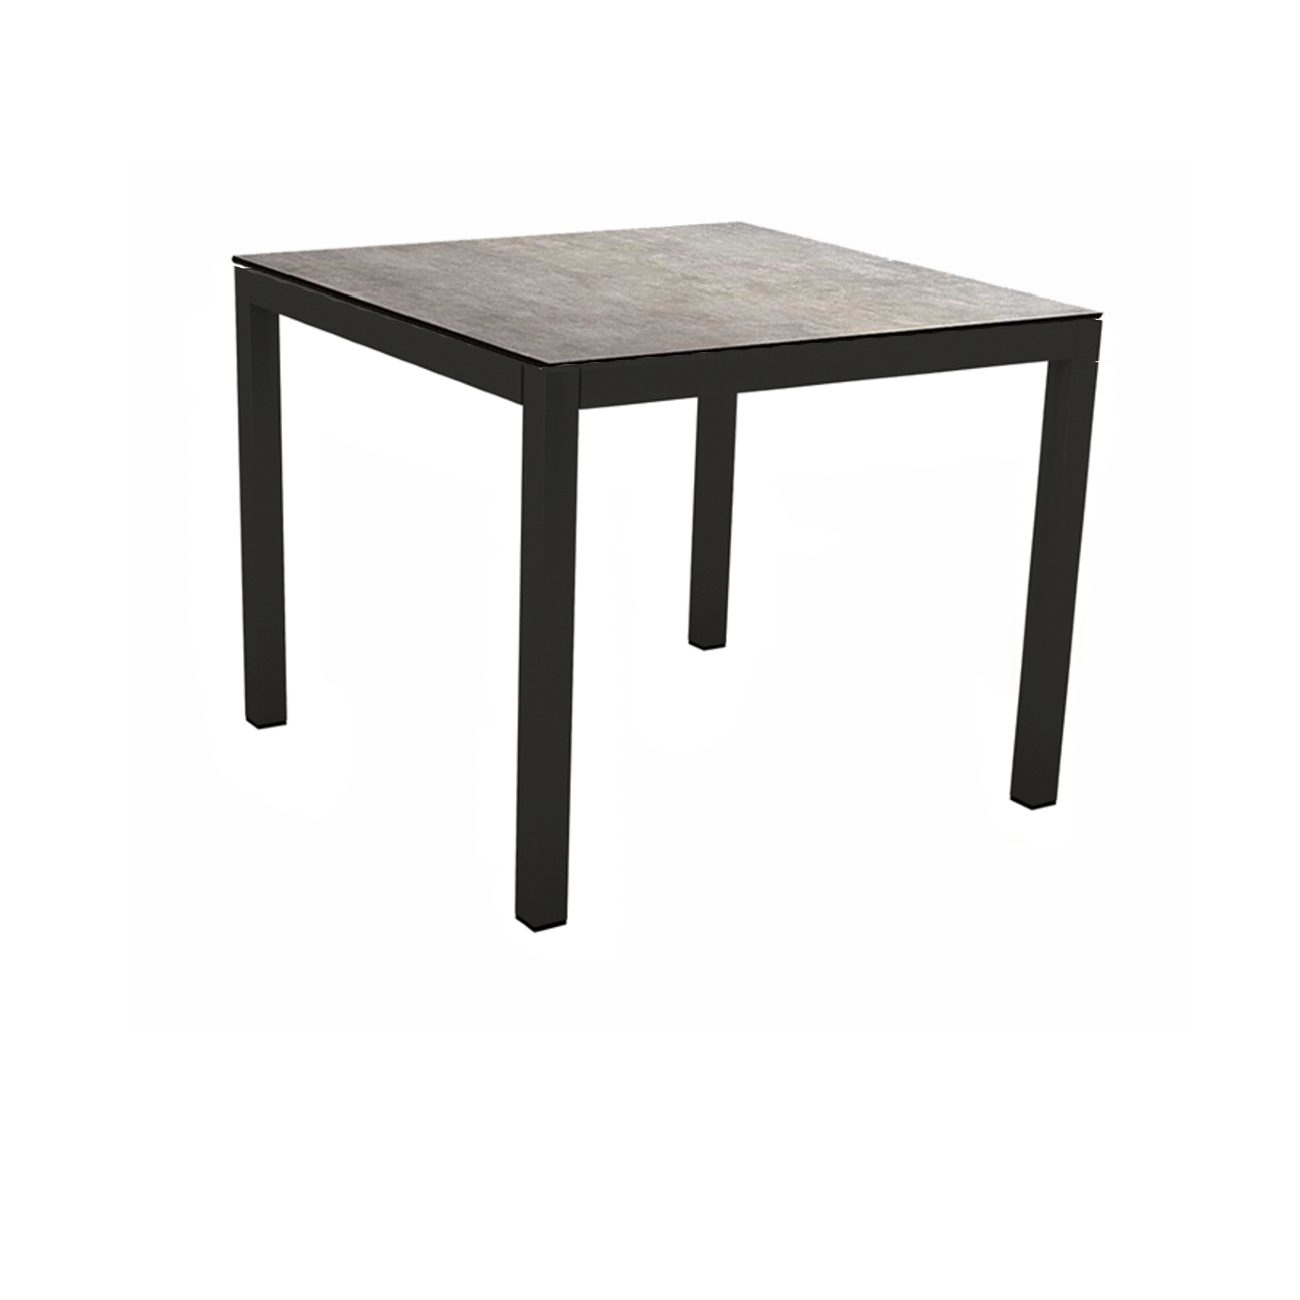 Stern Gartentisch, Gestell Aluminium schwarz matt, Tischplatte HPL Metallic Grau, 90x90 cm